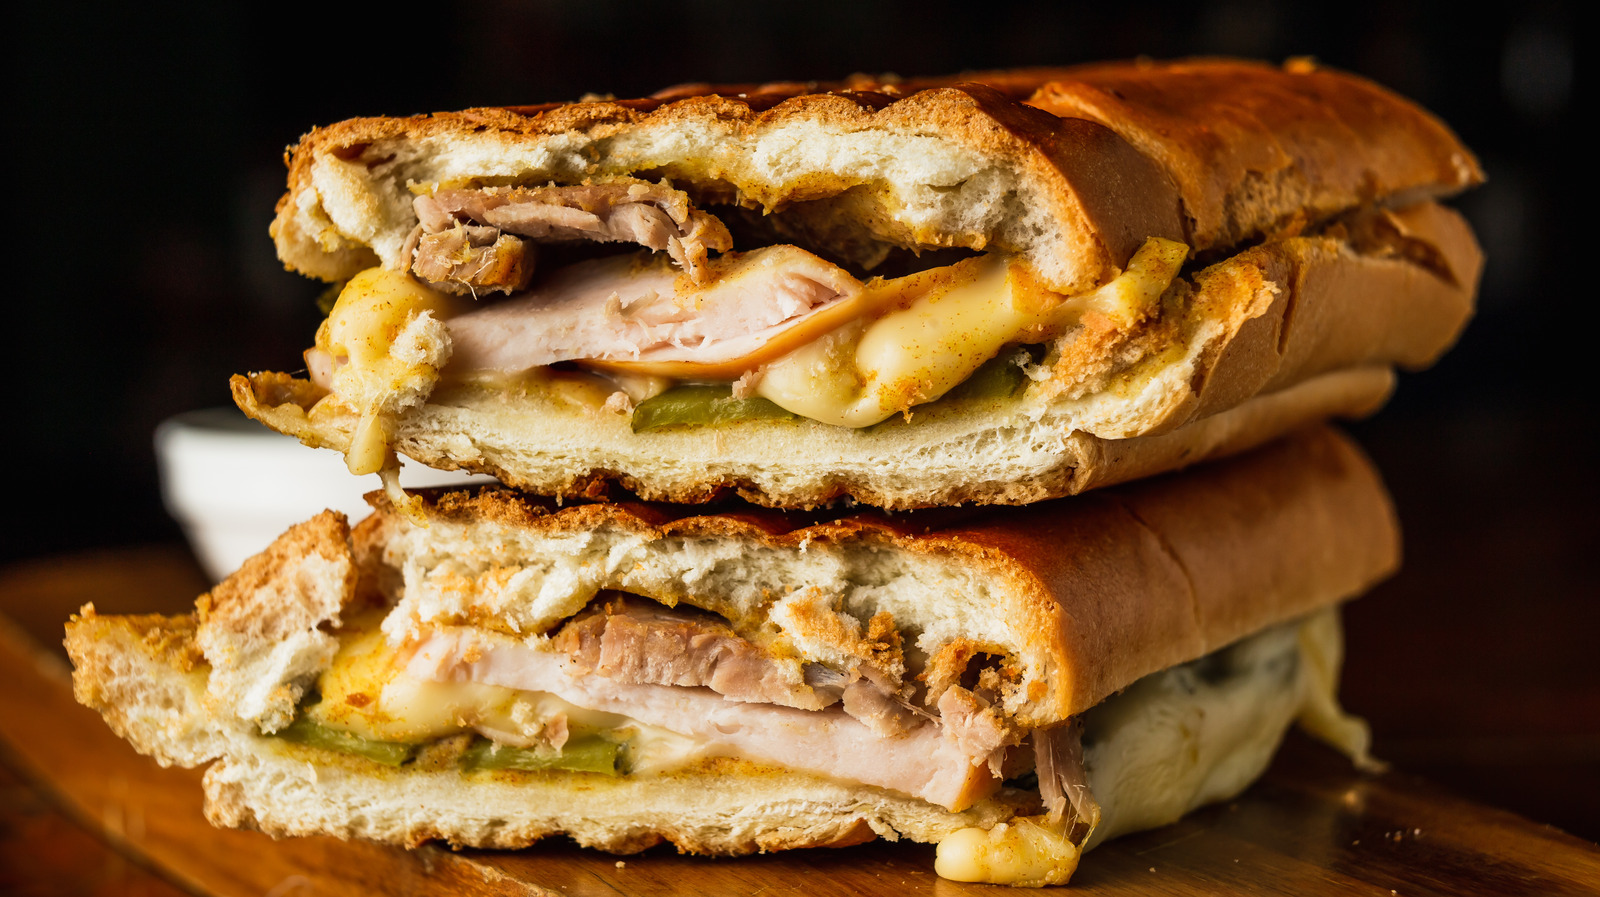 What Makes A TampaStyle Cuban Sandwich Unique?